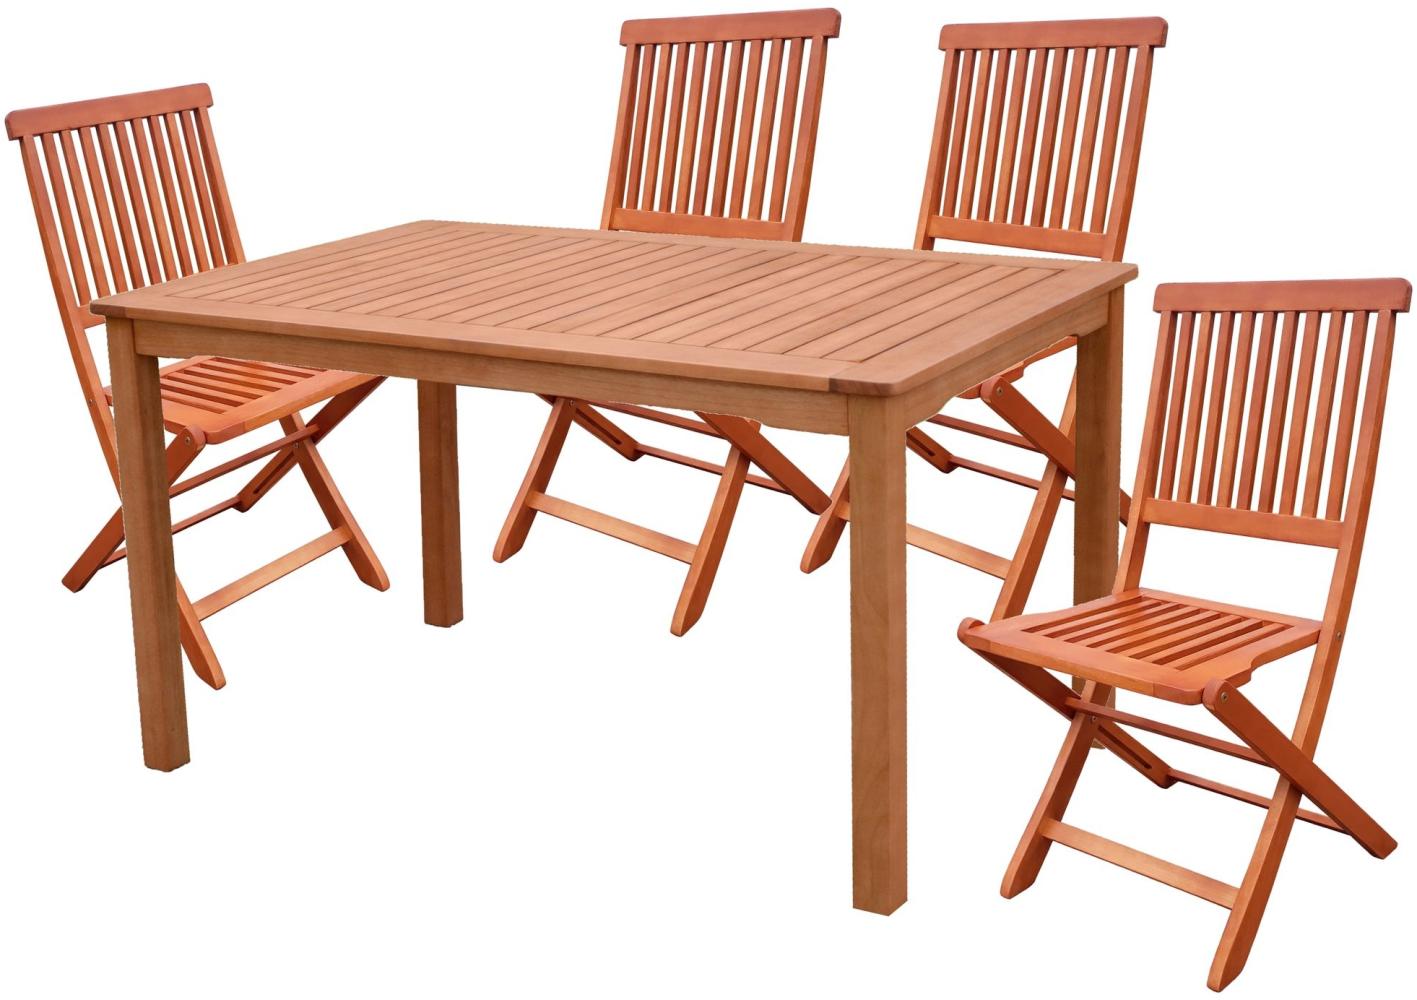 5tlg. Holz Tischgruppe Gartenmöbel Gartentisch Stuhl Garten Hochlehner Tisch Bild 1